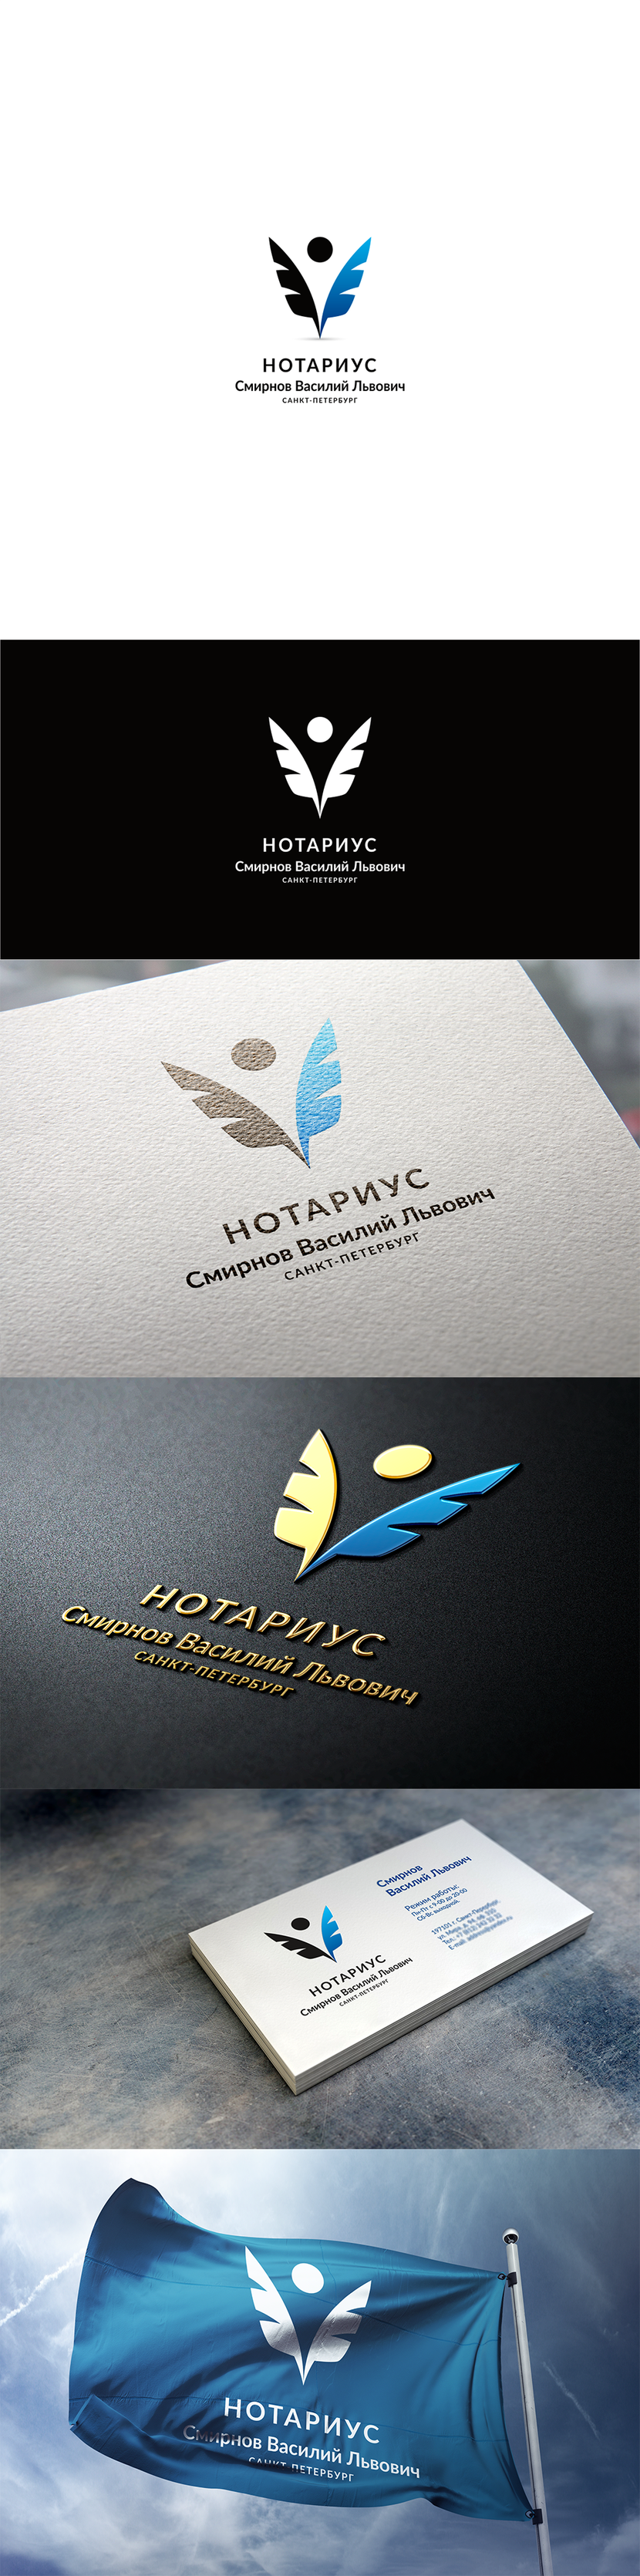 + - Разработка логотипа для нотариальной конторы и фирменного стиля нотариуса Санкт-Петербурга.